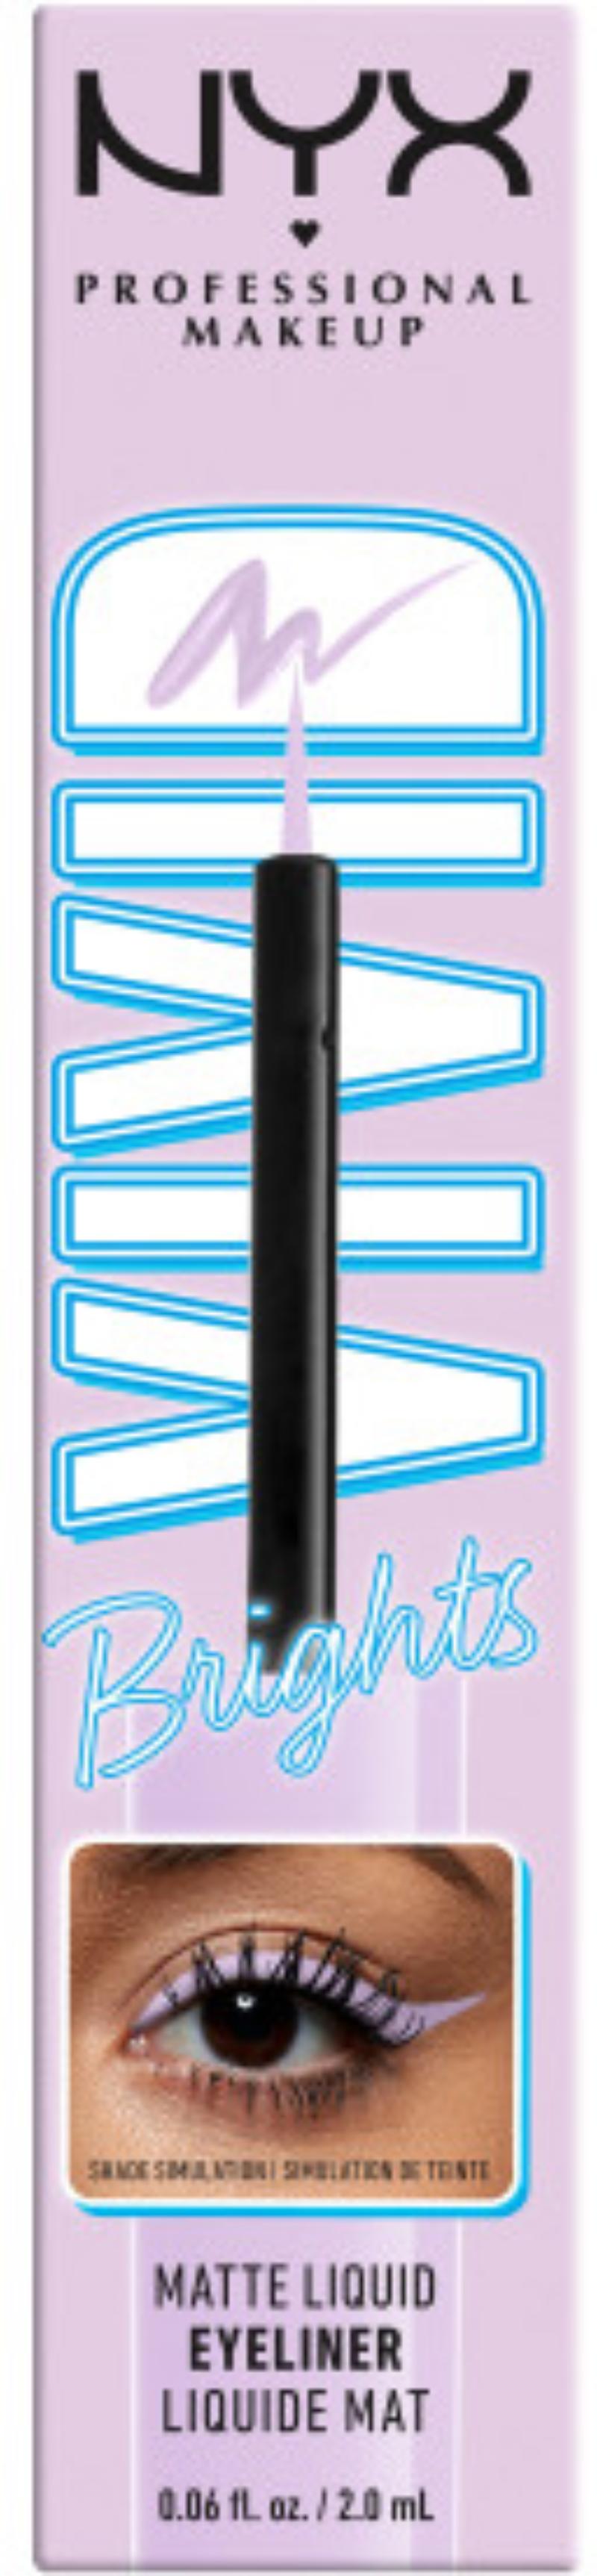 Eyeliner NYX Epic Smoke Liner 11-mocha match 2 em 1 (13,5 g) - NYX